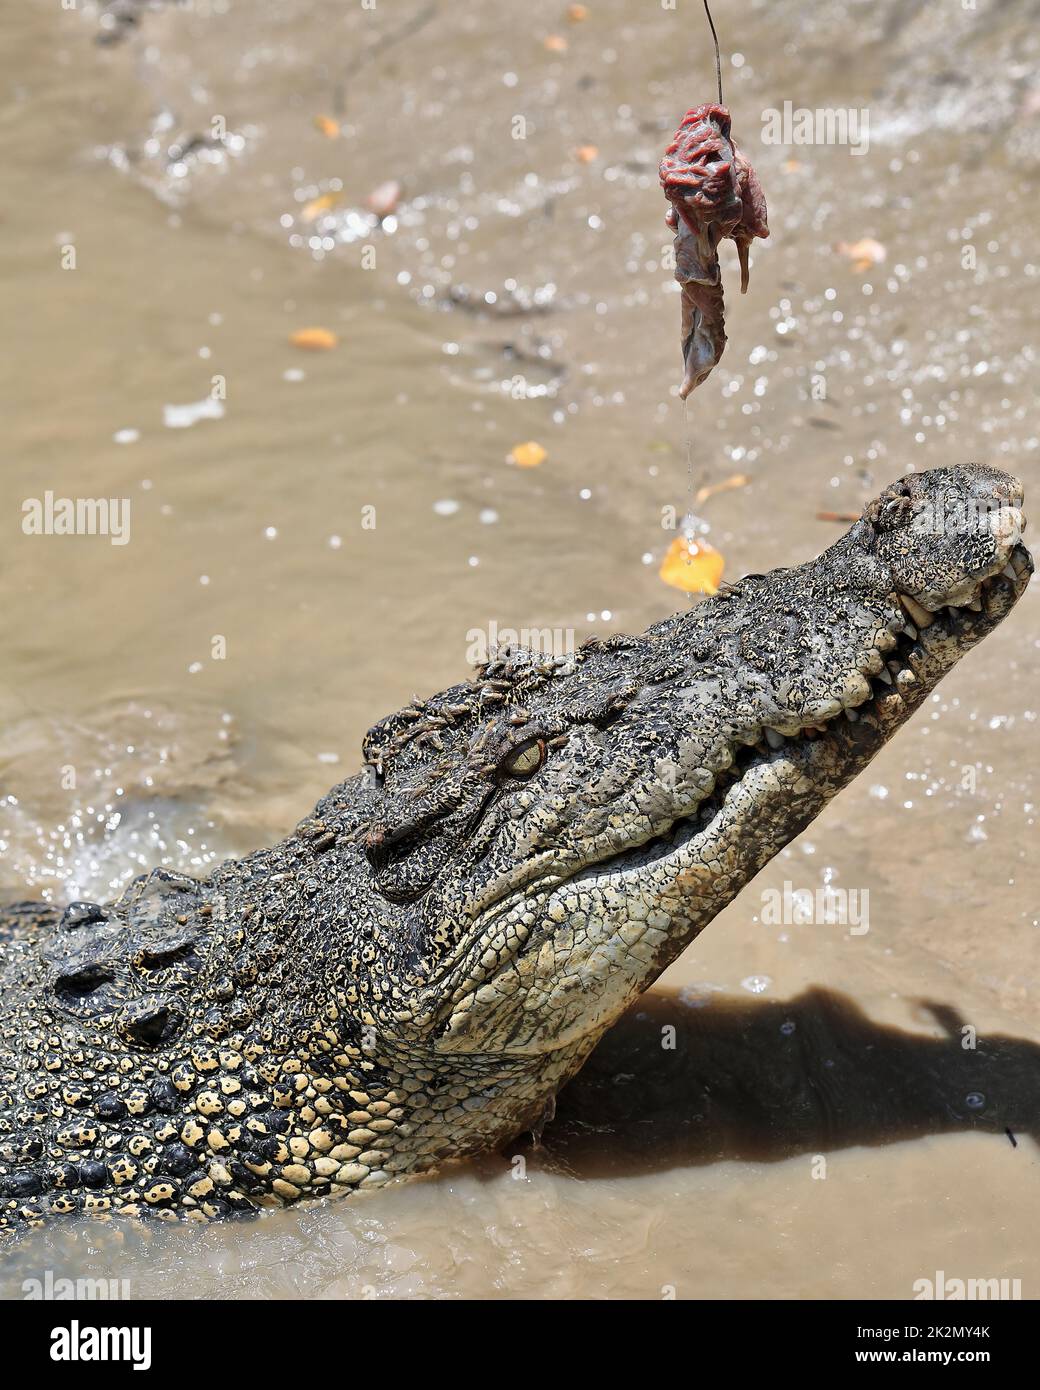 166 große Salzwasser Krokodil am Köder fangen. Adelaide River – Australien. Stockfoto